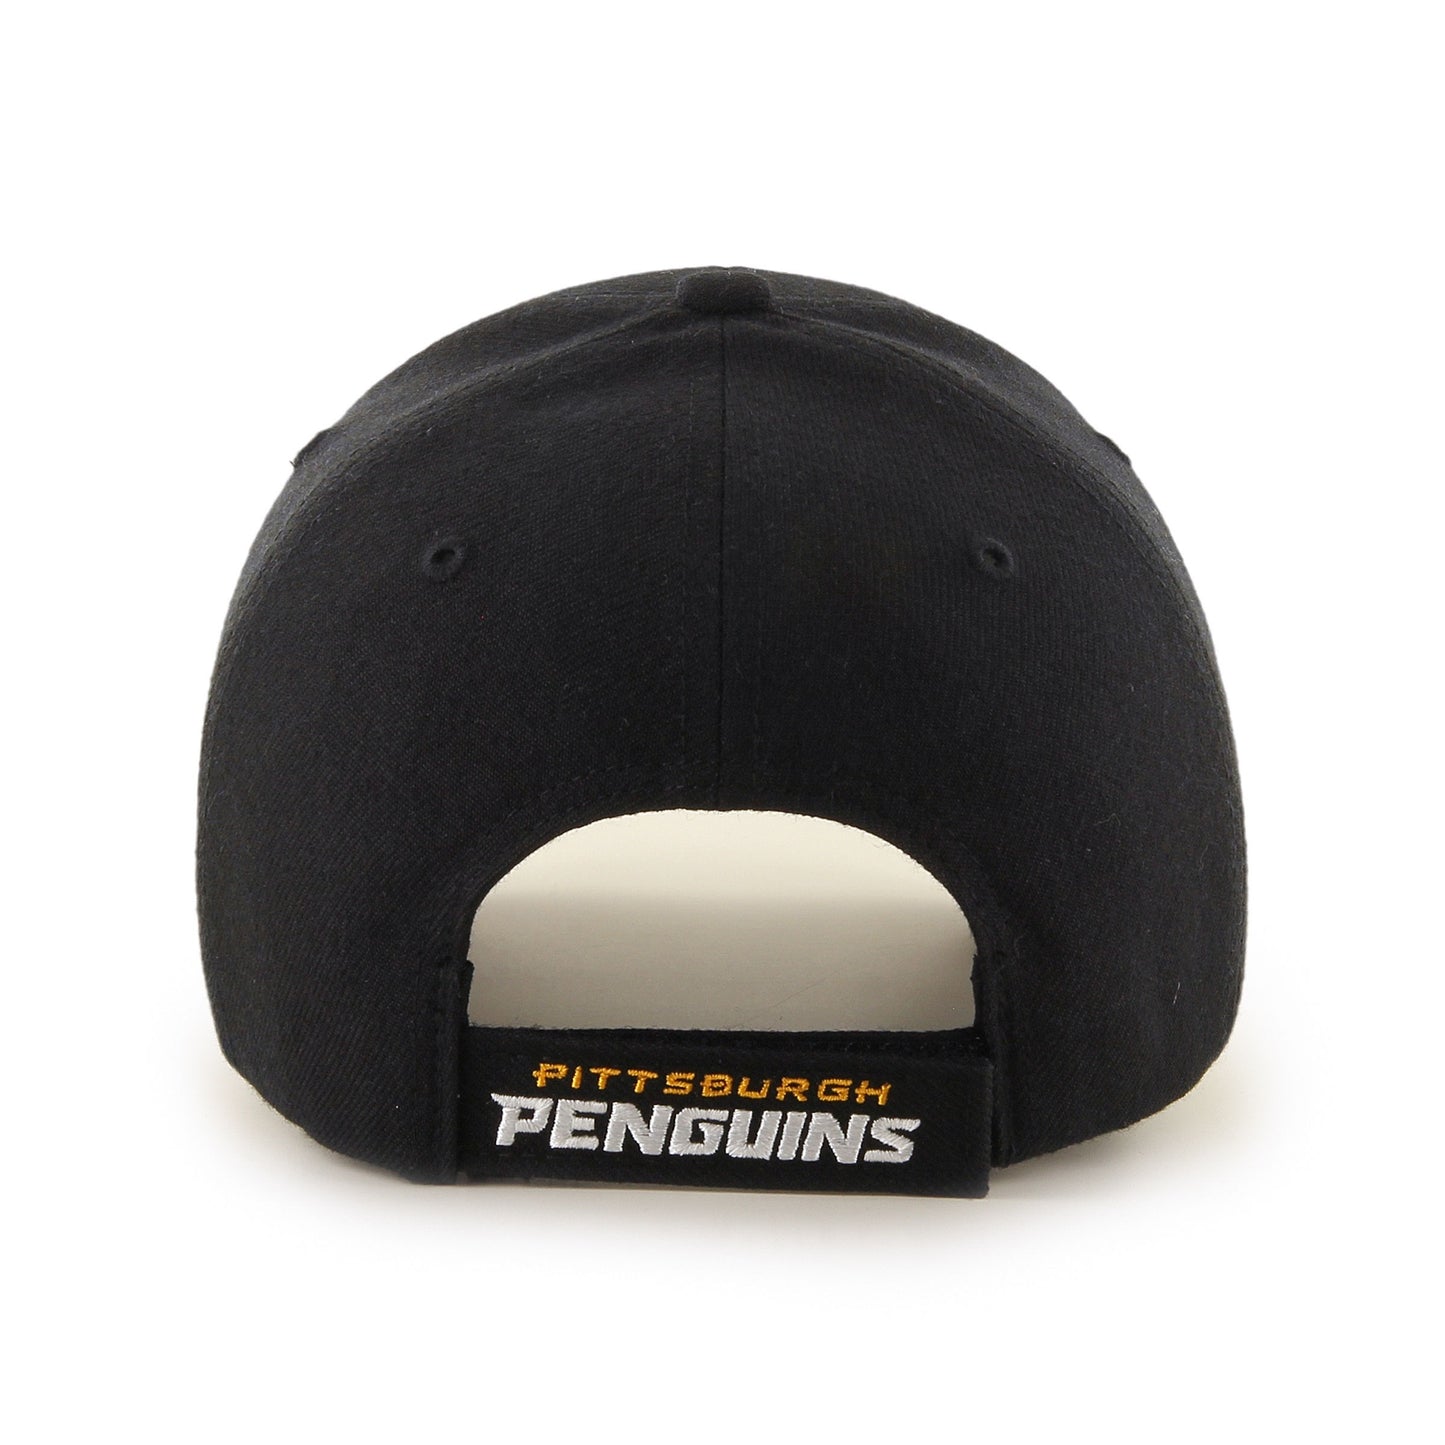 '47 - Pittsburgh Penguins MVP Adjustable Cap - Sort - Headz Up 